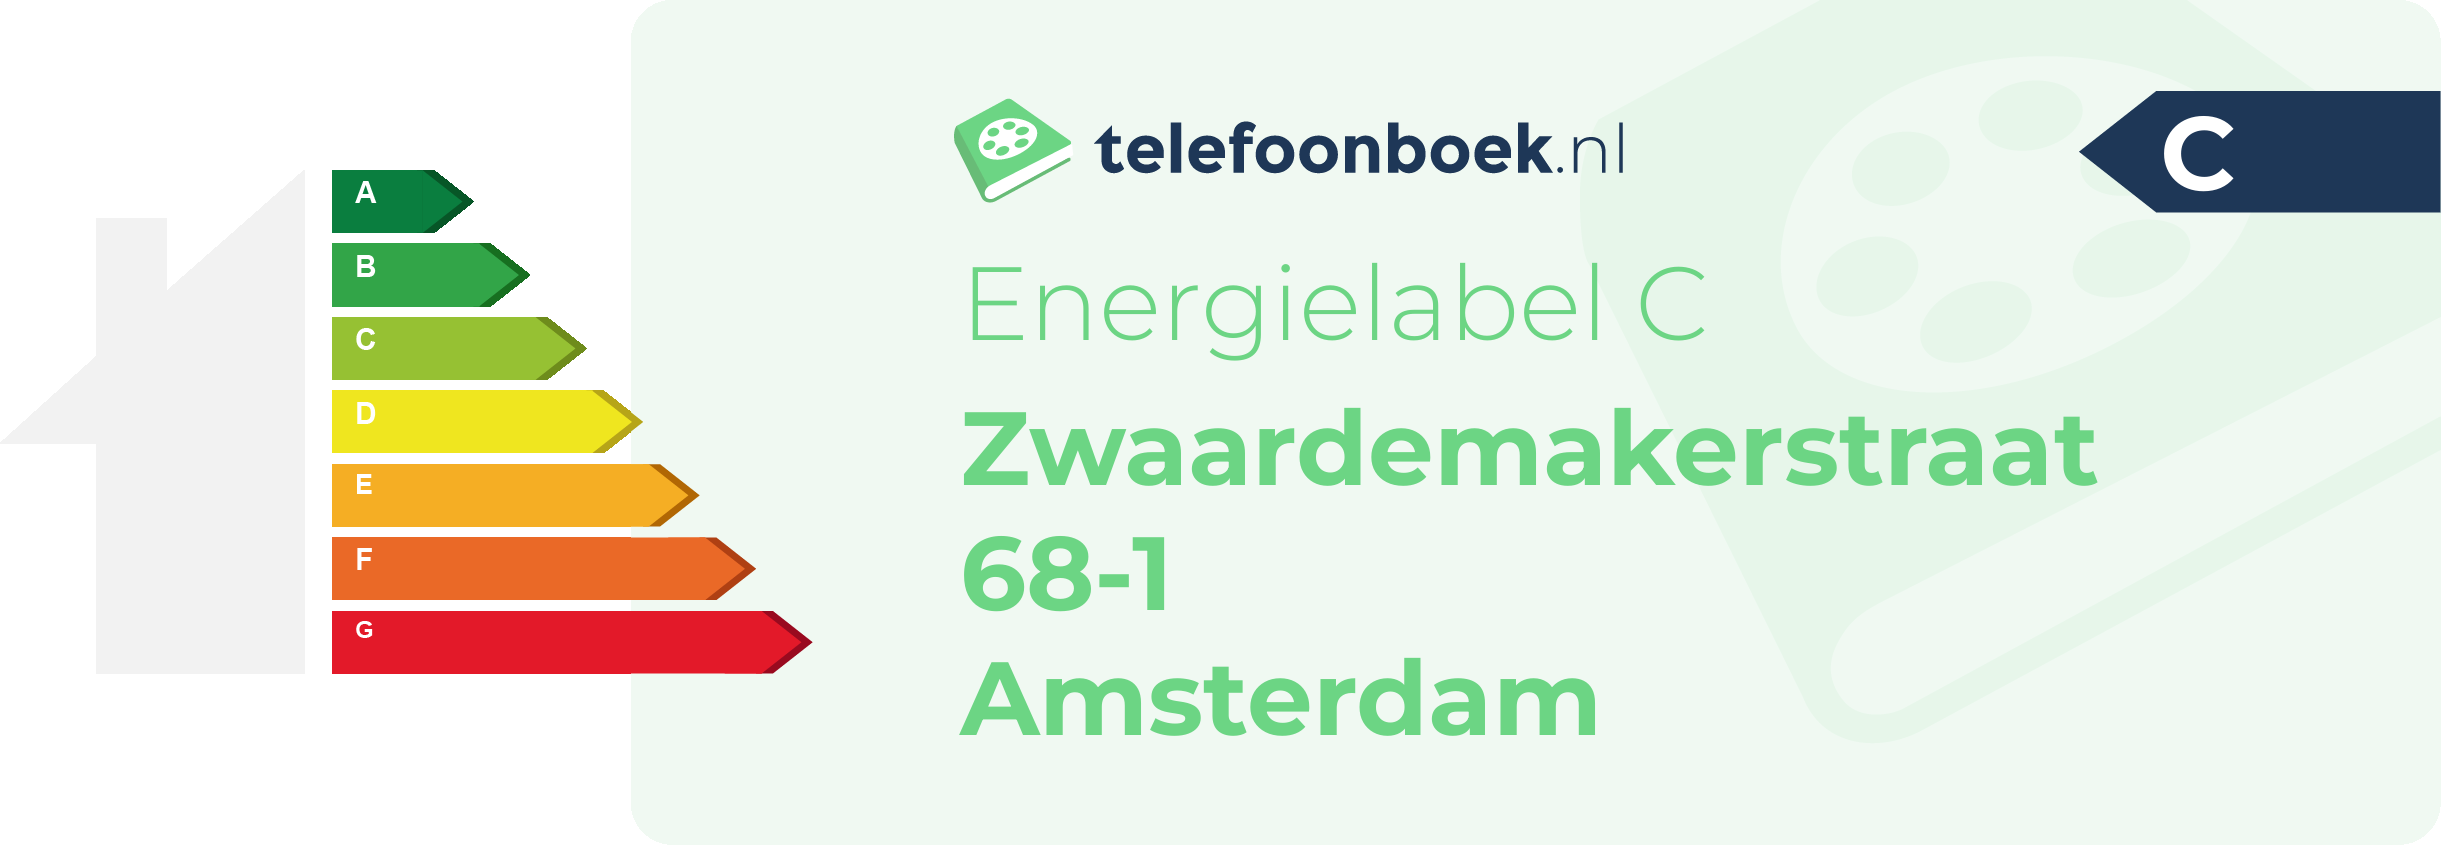 Energielabel Zwaardemakerstraat 68-1 Amsterdam